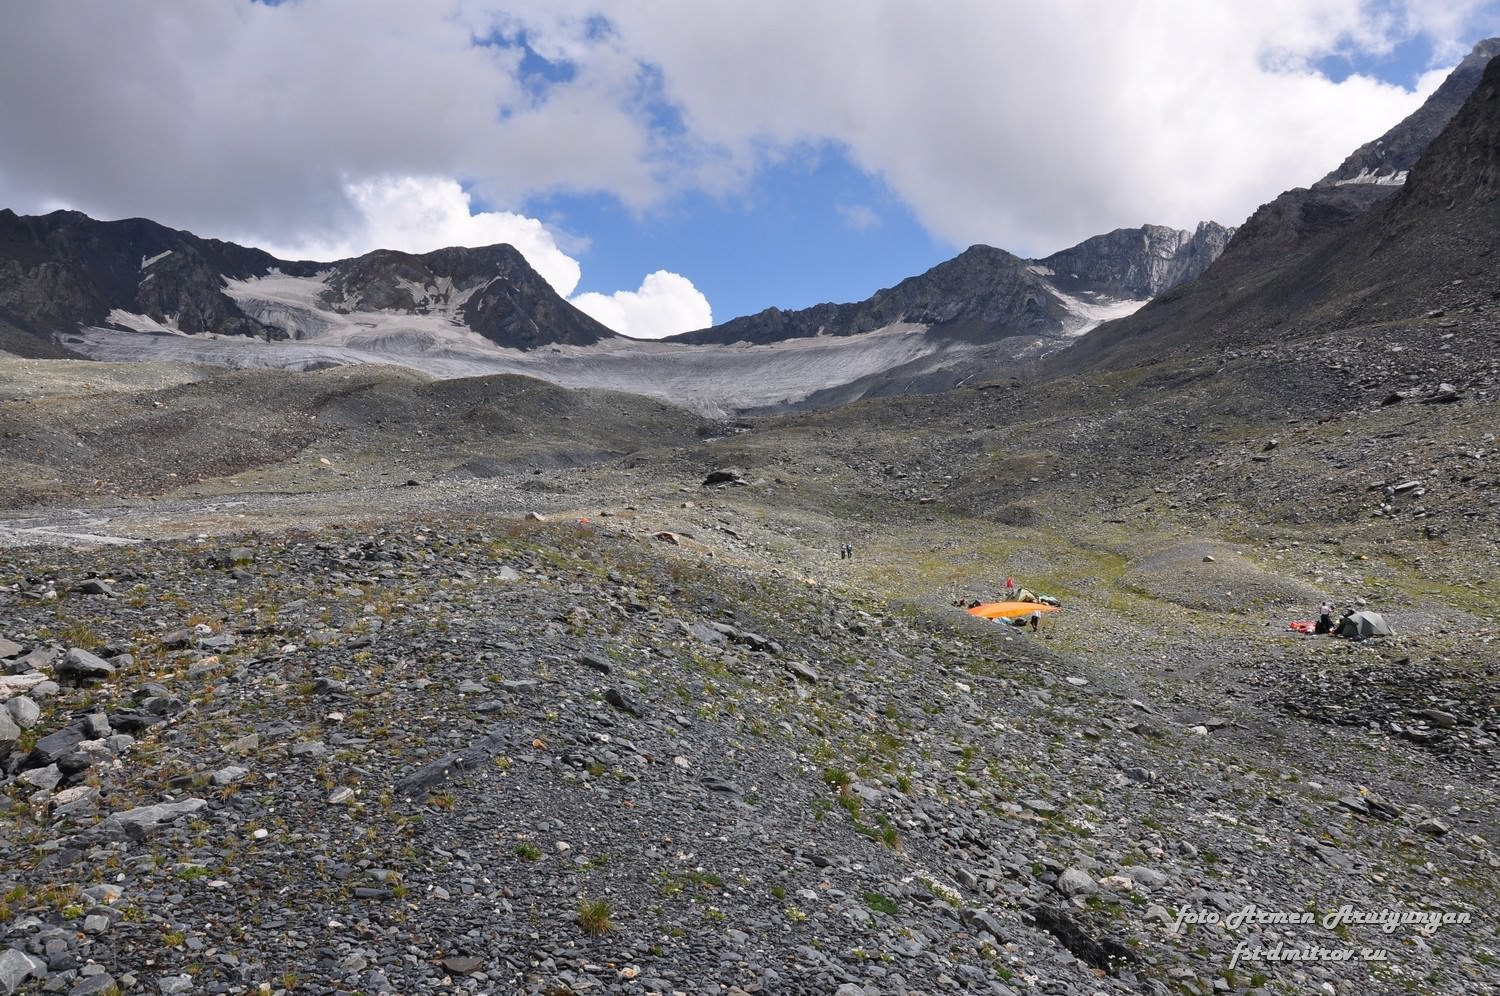 Camping below Kibishi glacier